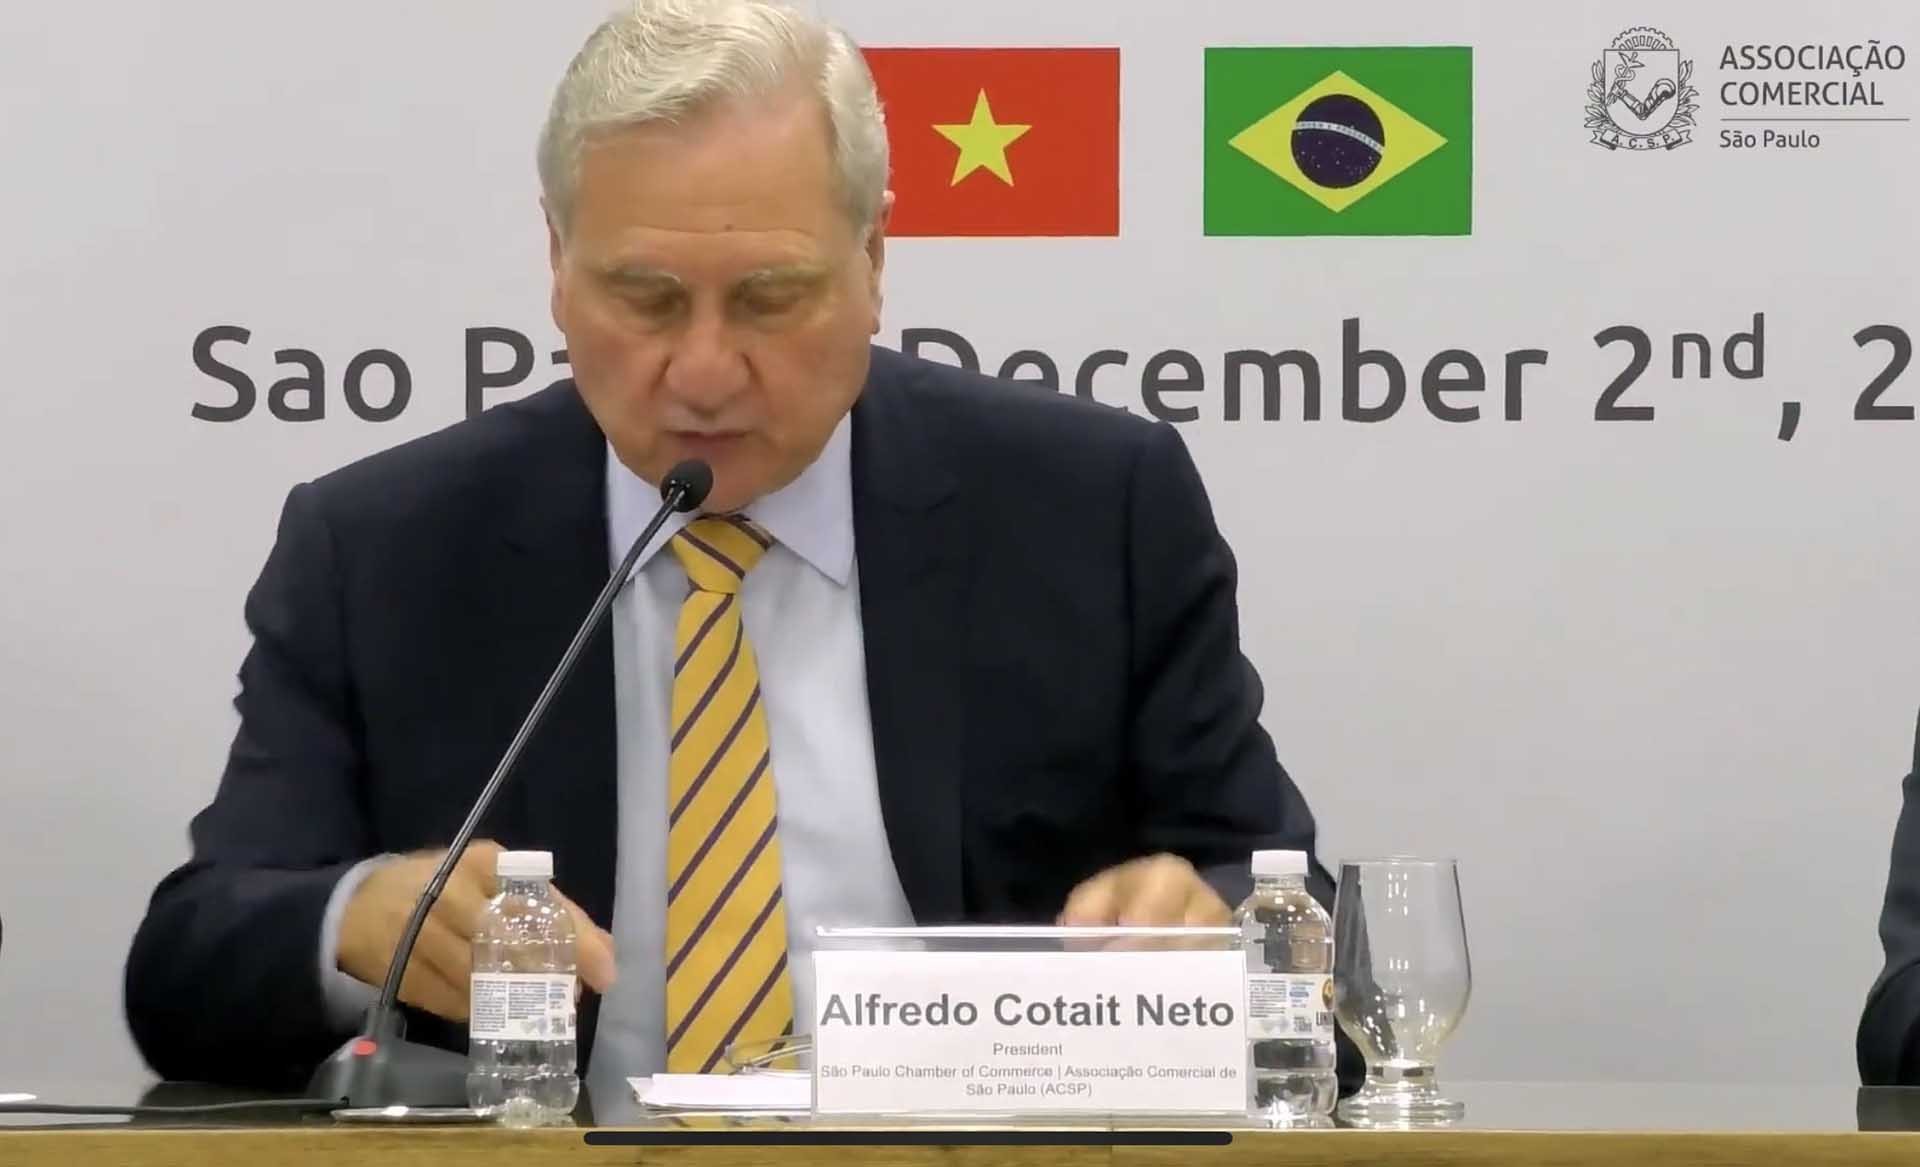 Ông Alfredo Cotait Neto, Chủ tịch Phòng Thương mại kiêm Chủ tịch Hội đồng thương mại São Paulo phát biểu.